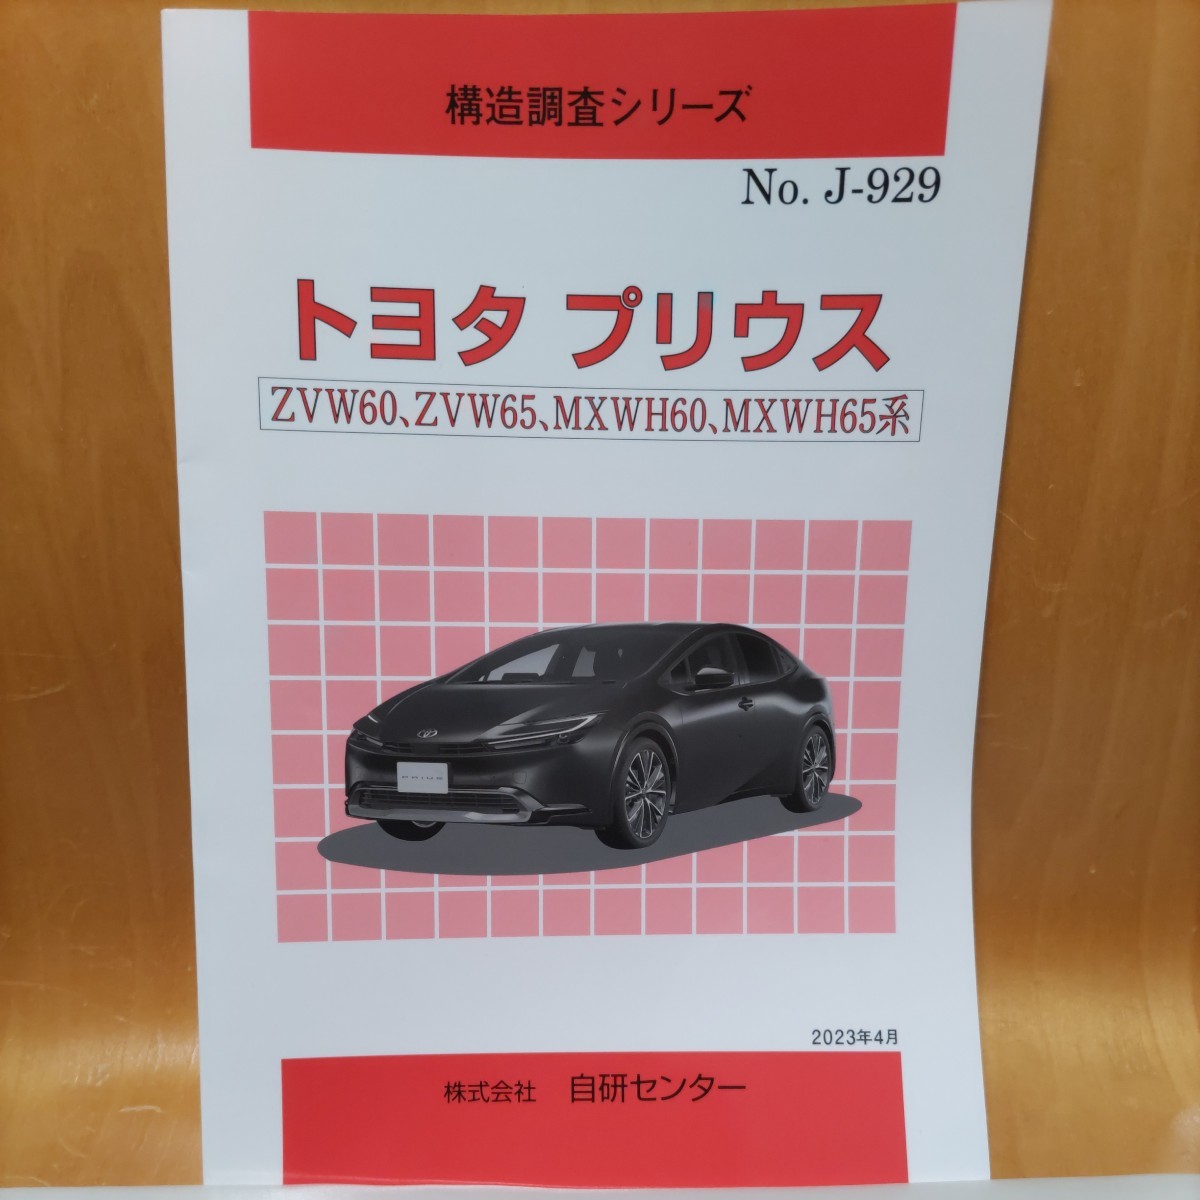 [Редко] серия структурных исследований Toyota Prius AVW60, ZVW65, MXWH60, MXWH65 Series [популярно]